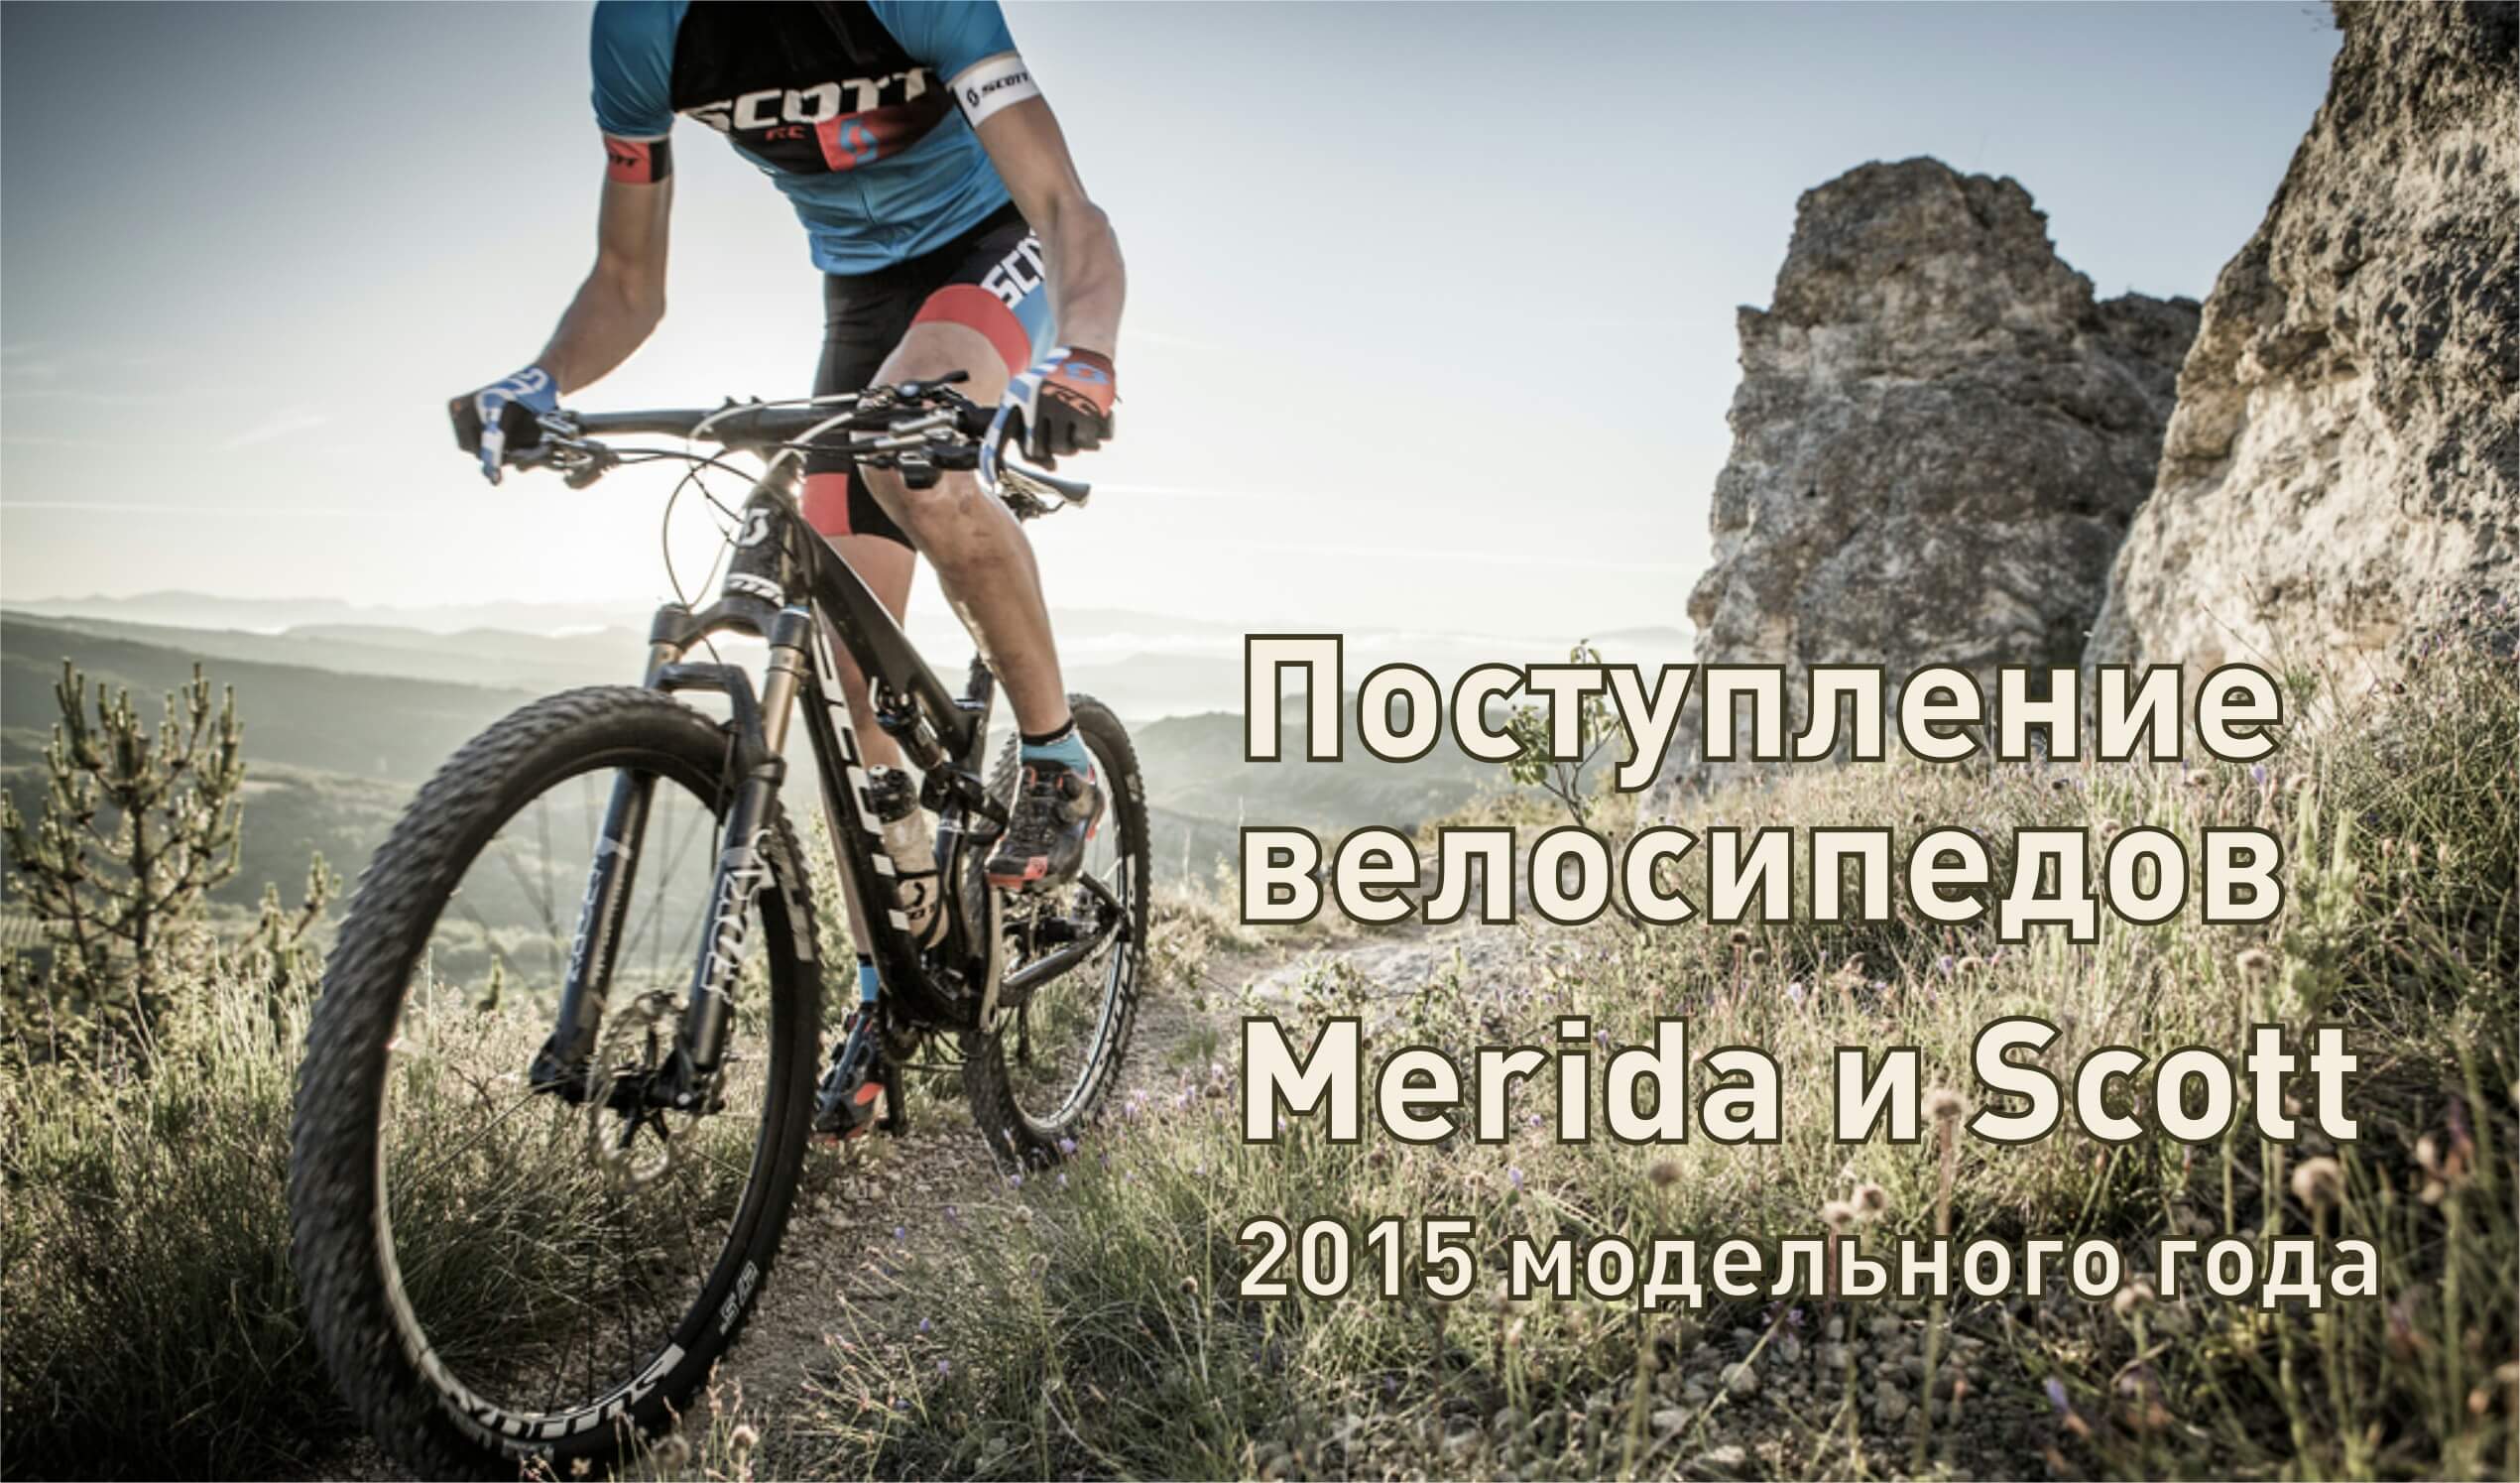 Поступление велосипедов Merida и Scott 2015